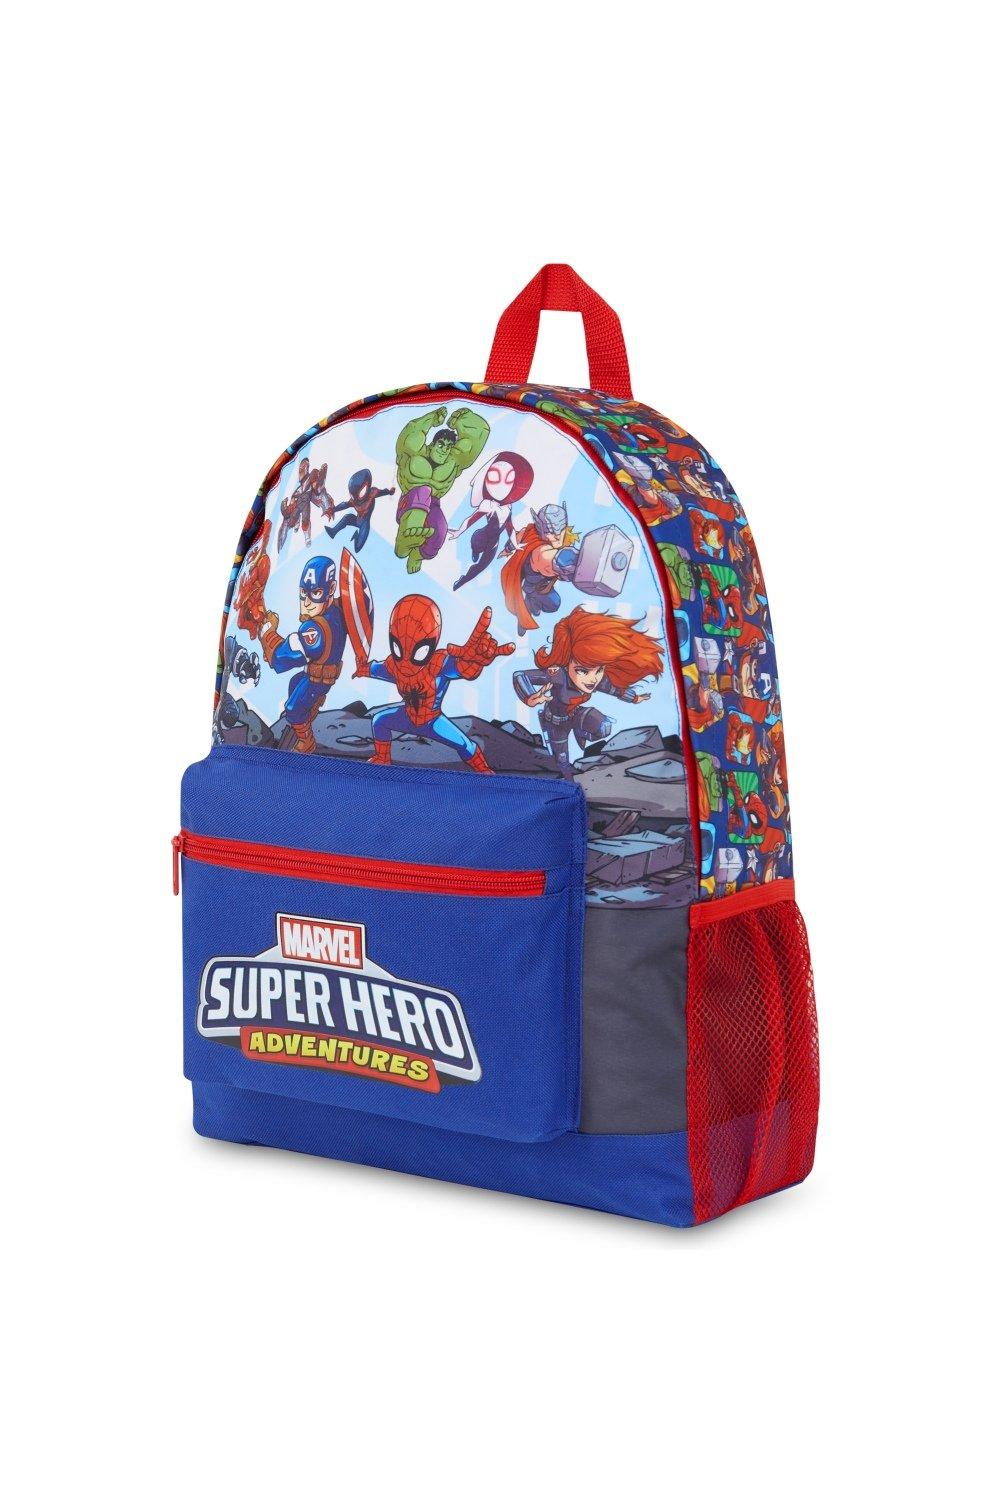 Рюкзак Мстителей Marvel, мультиколор детский рюкзак в kidergarten милый школьный рюкзак для мальчиков и девочек школьные сумки с мультипликационным рисунком детский подарок школь